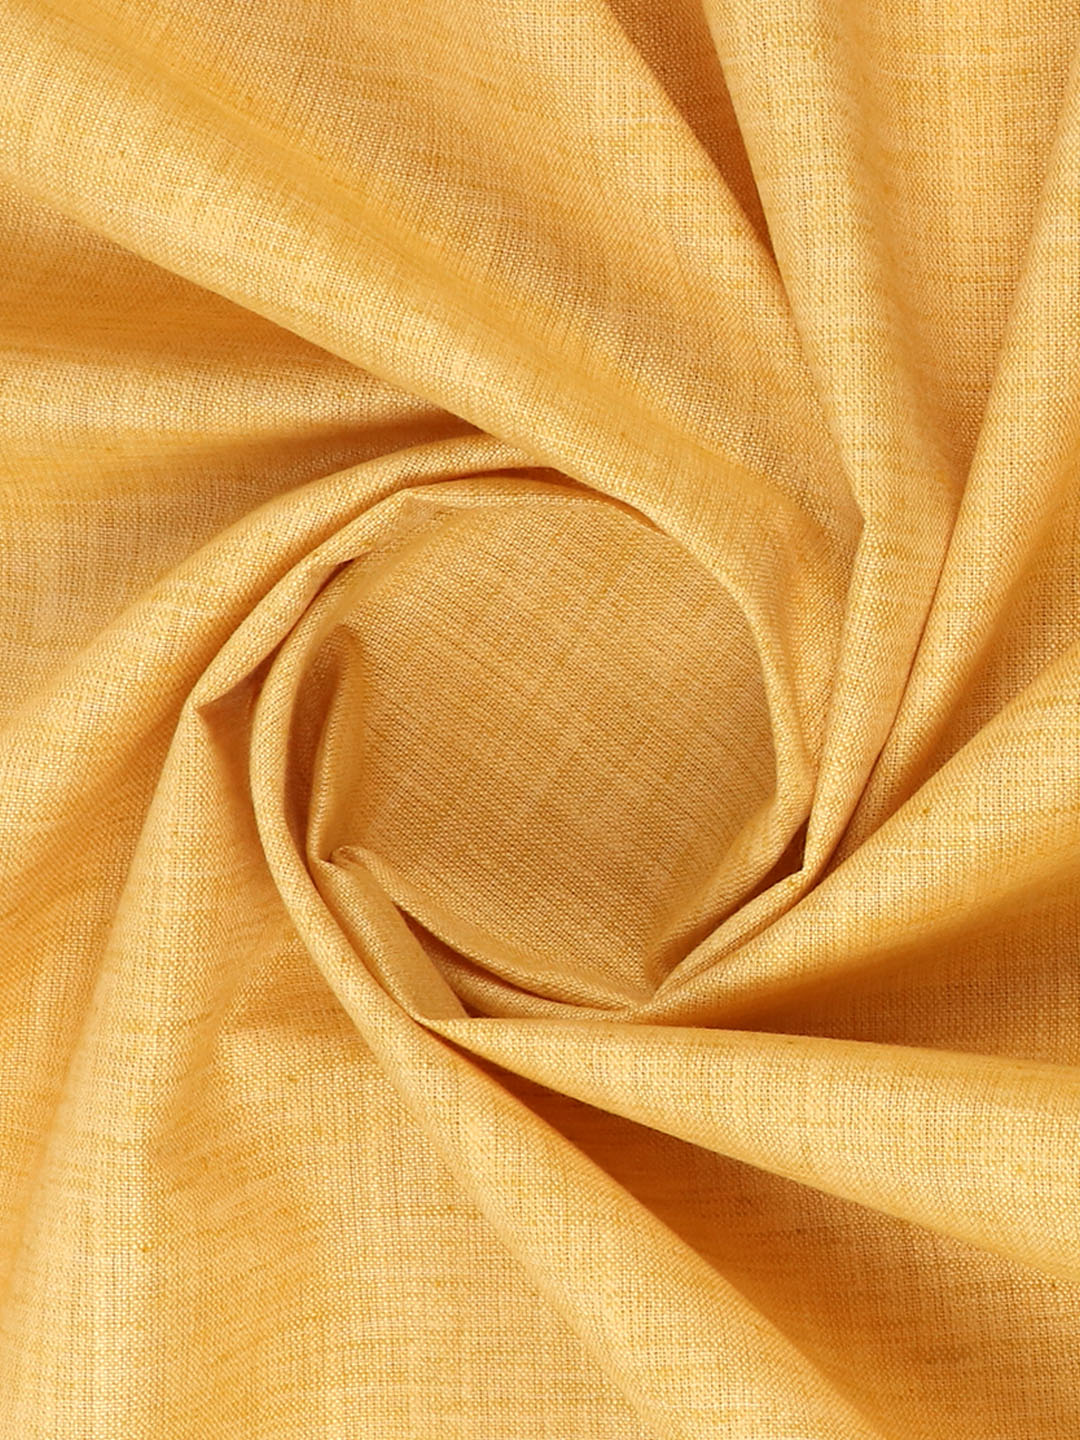 Cotton Blend Mustard Colour Kurtha Fabric Lampus - APC1106-34